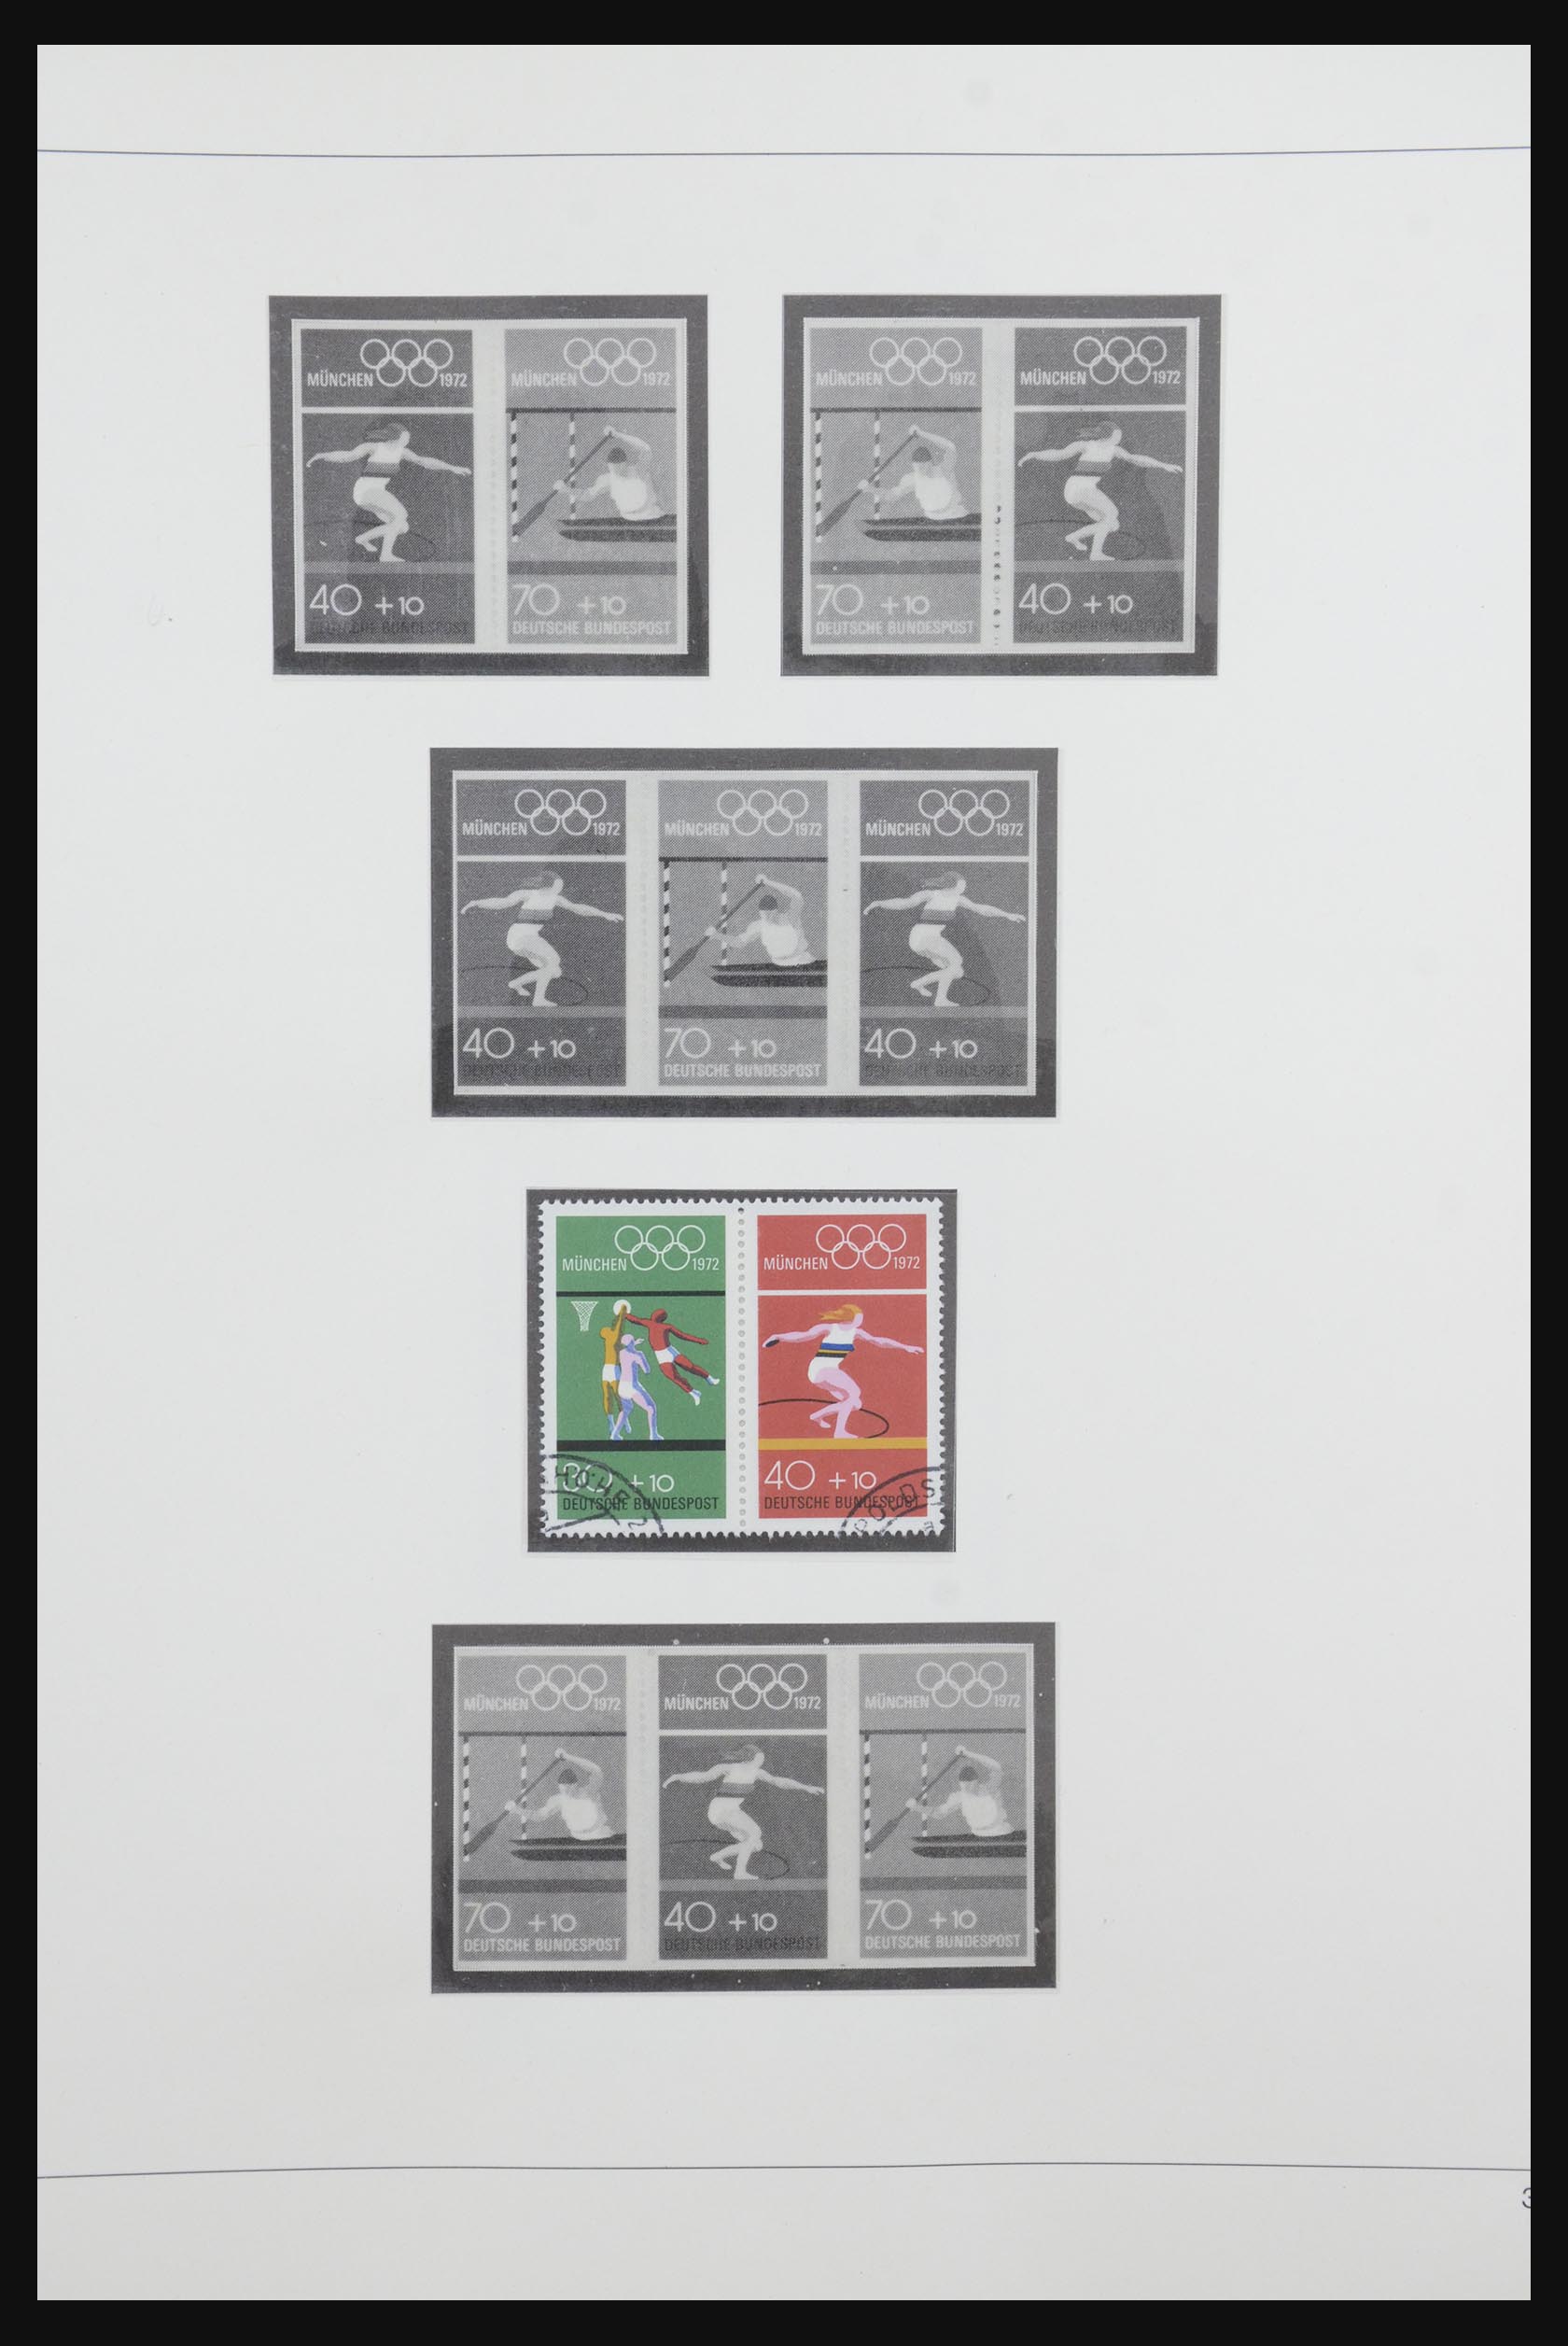 31842 044 - 31842 Bundespost combinations 1951-2003.